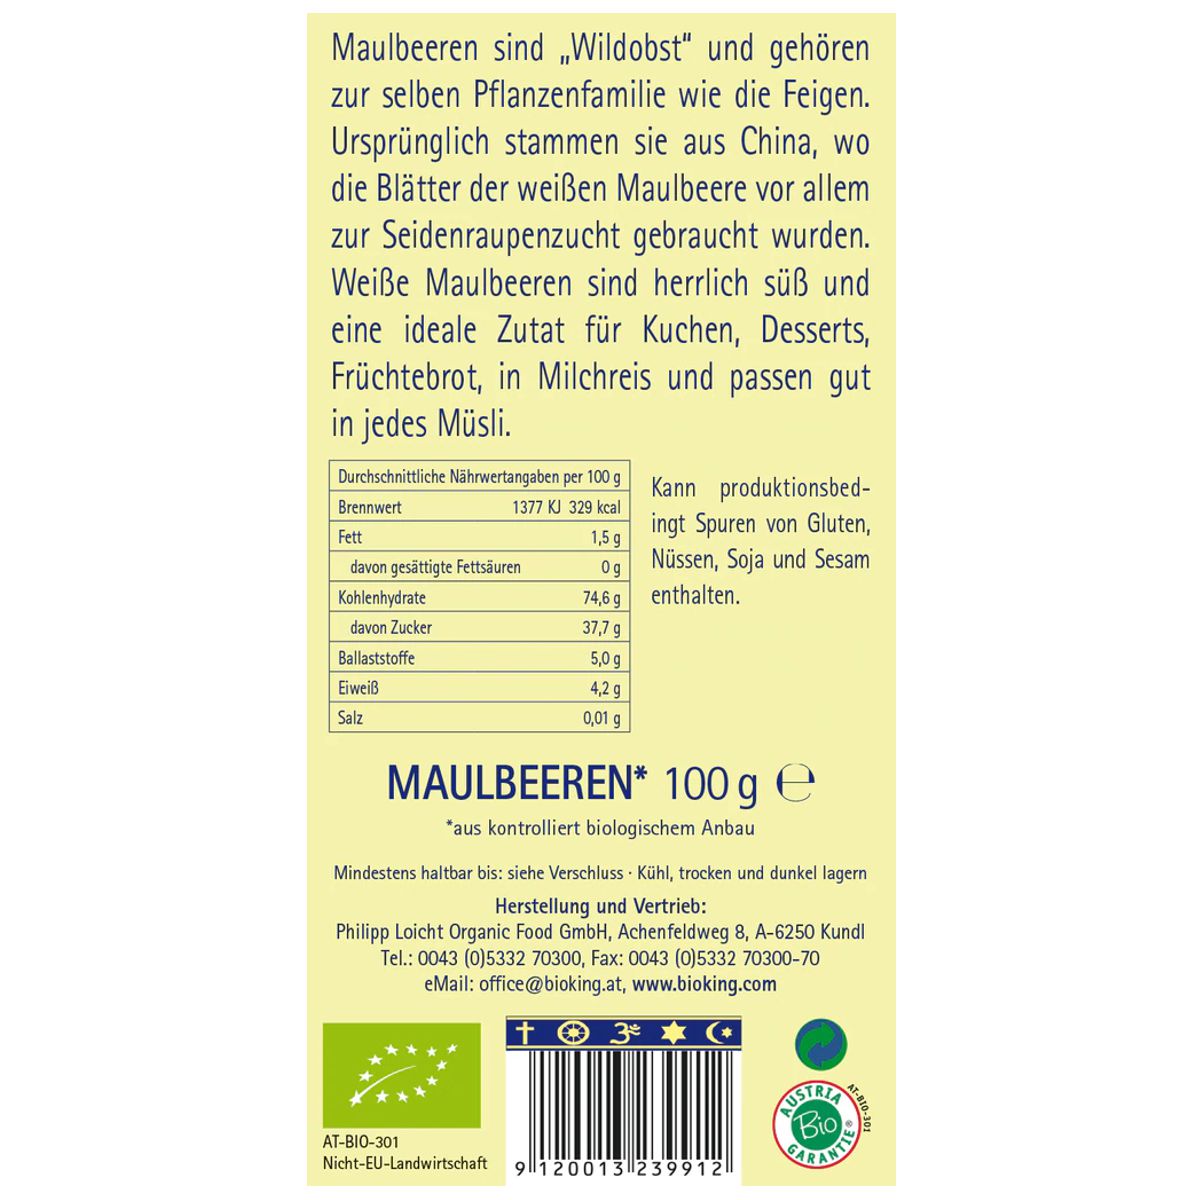 Bioking_weisse_Maulbeeren_100g_online_kaufen